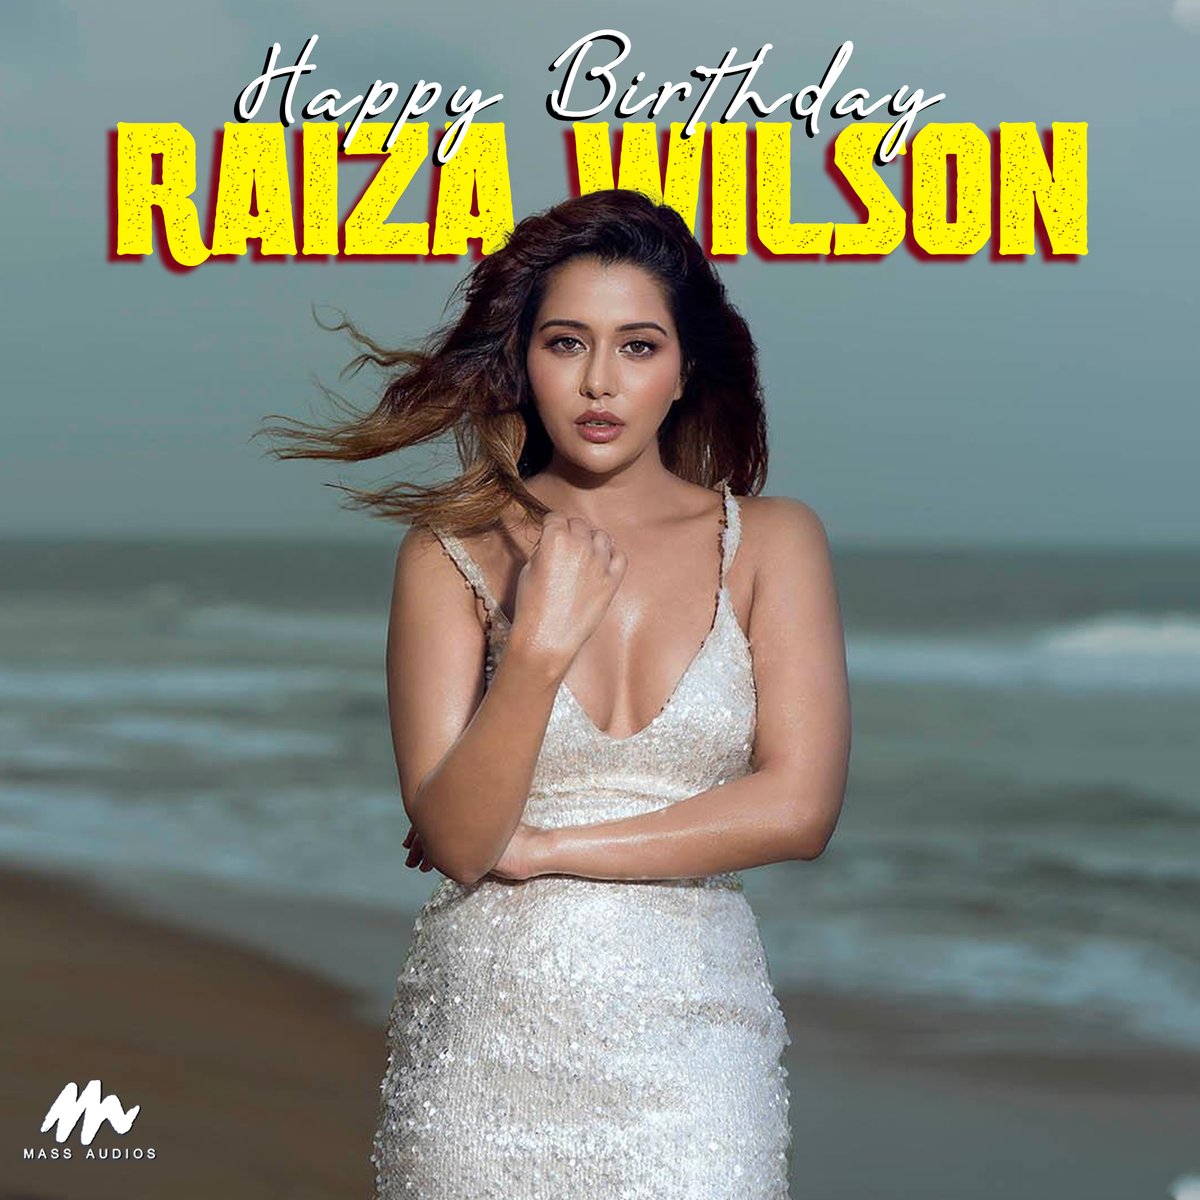 Wishing #RaizaWilson A Very Happy Birthday #happybirthdayRaizaWilson #hbdRaizaWilson #massaudios